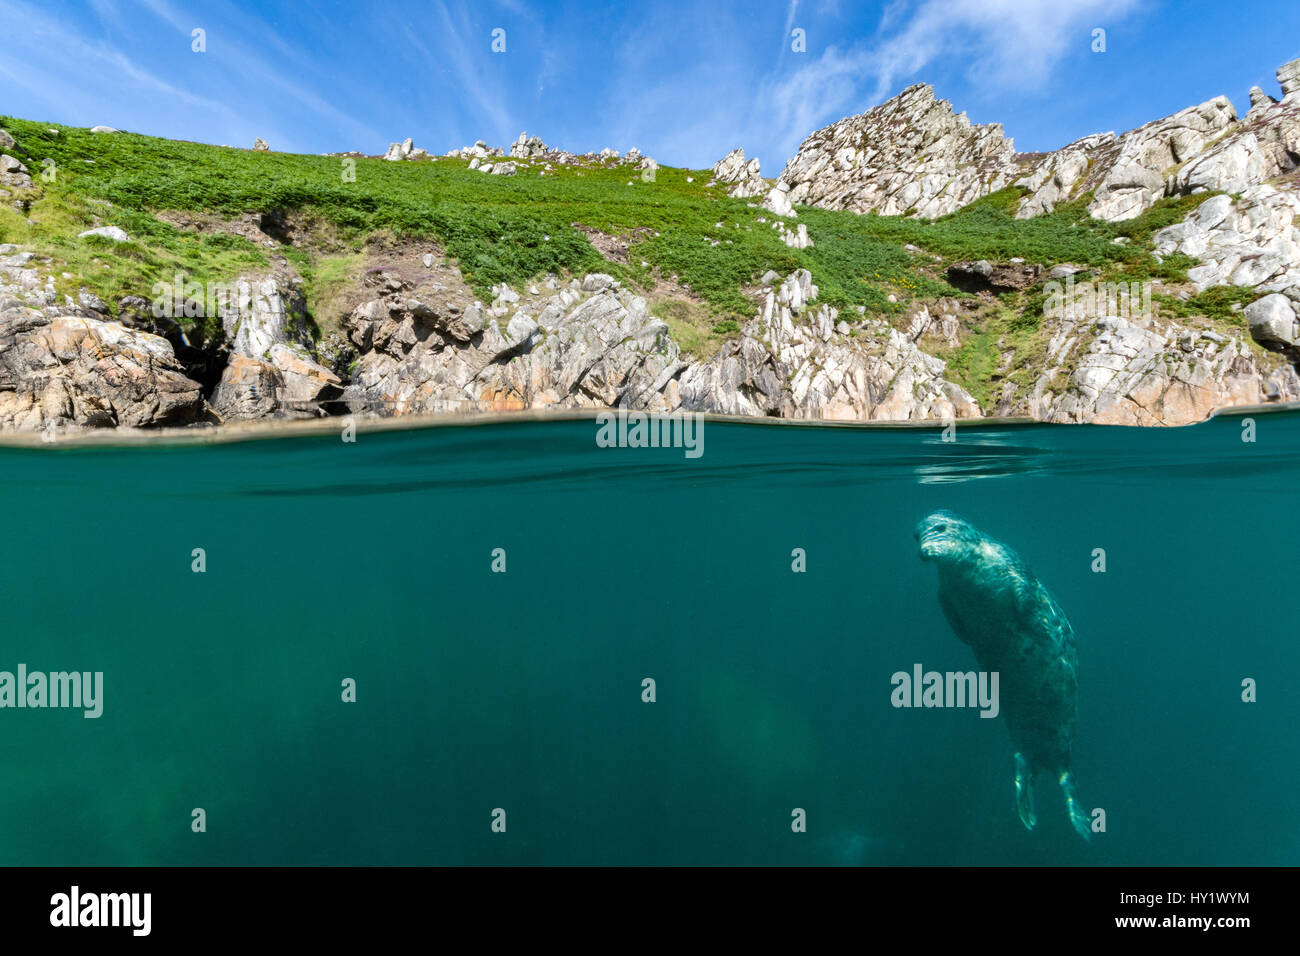 Split-Level Bild junge Kegelrobben (Halichoerus Grypus) hängen unter Oberfläche nahe am Ufer. Lundy Island, Devon, England, Vereinigtes Königreich. Britischen Inseln. Bristol Channel. Nord Osten Atlantischen Ozean. Stockfoto